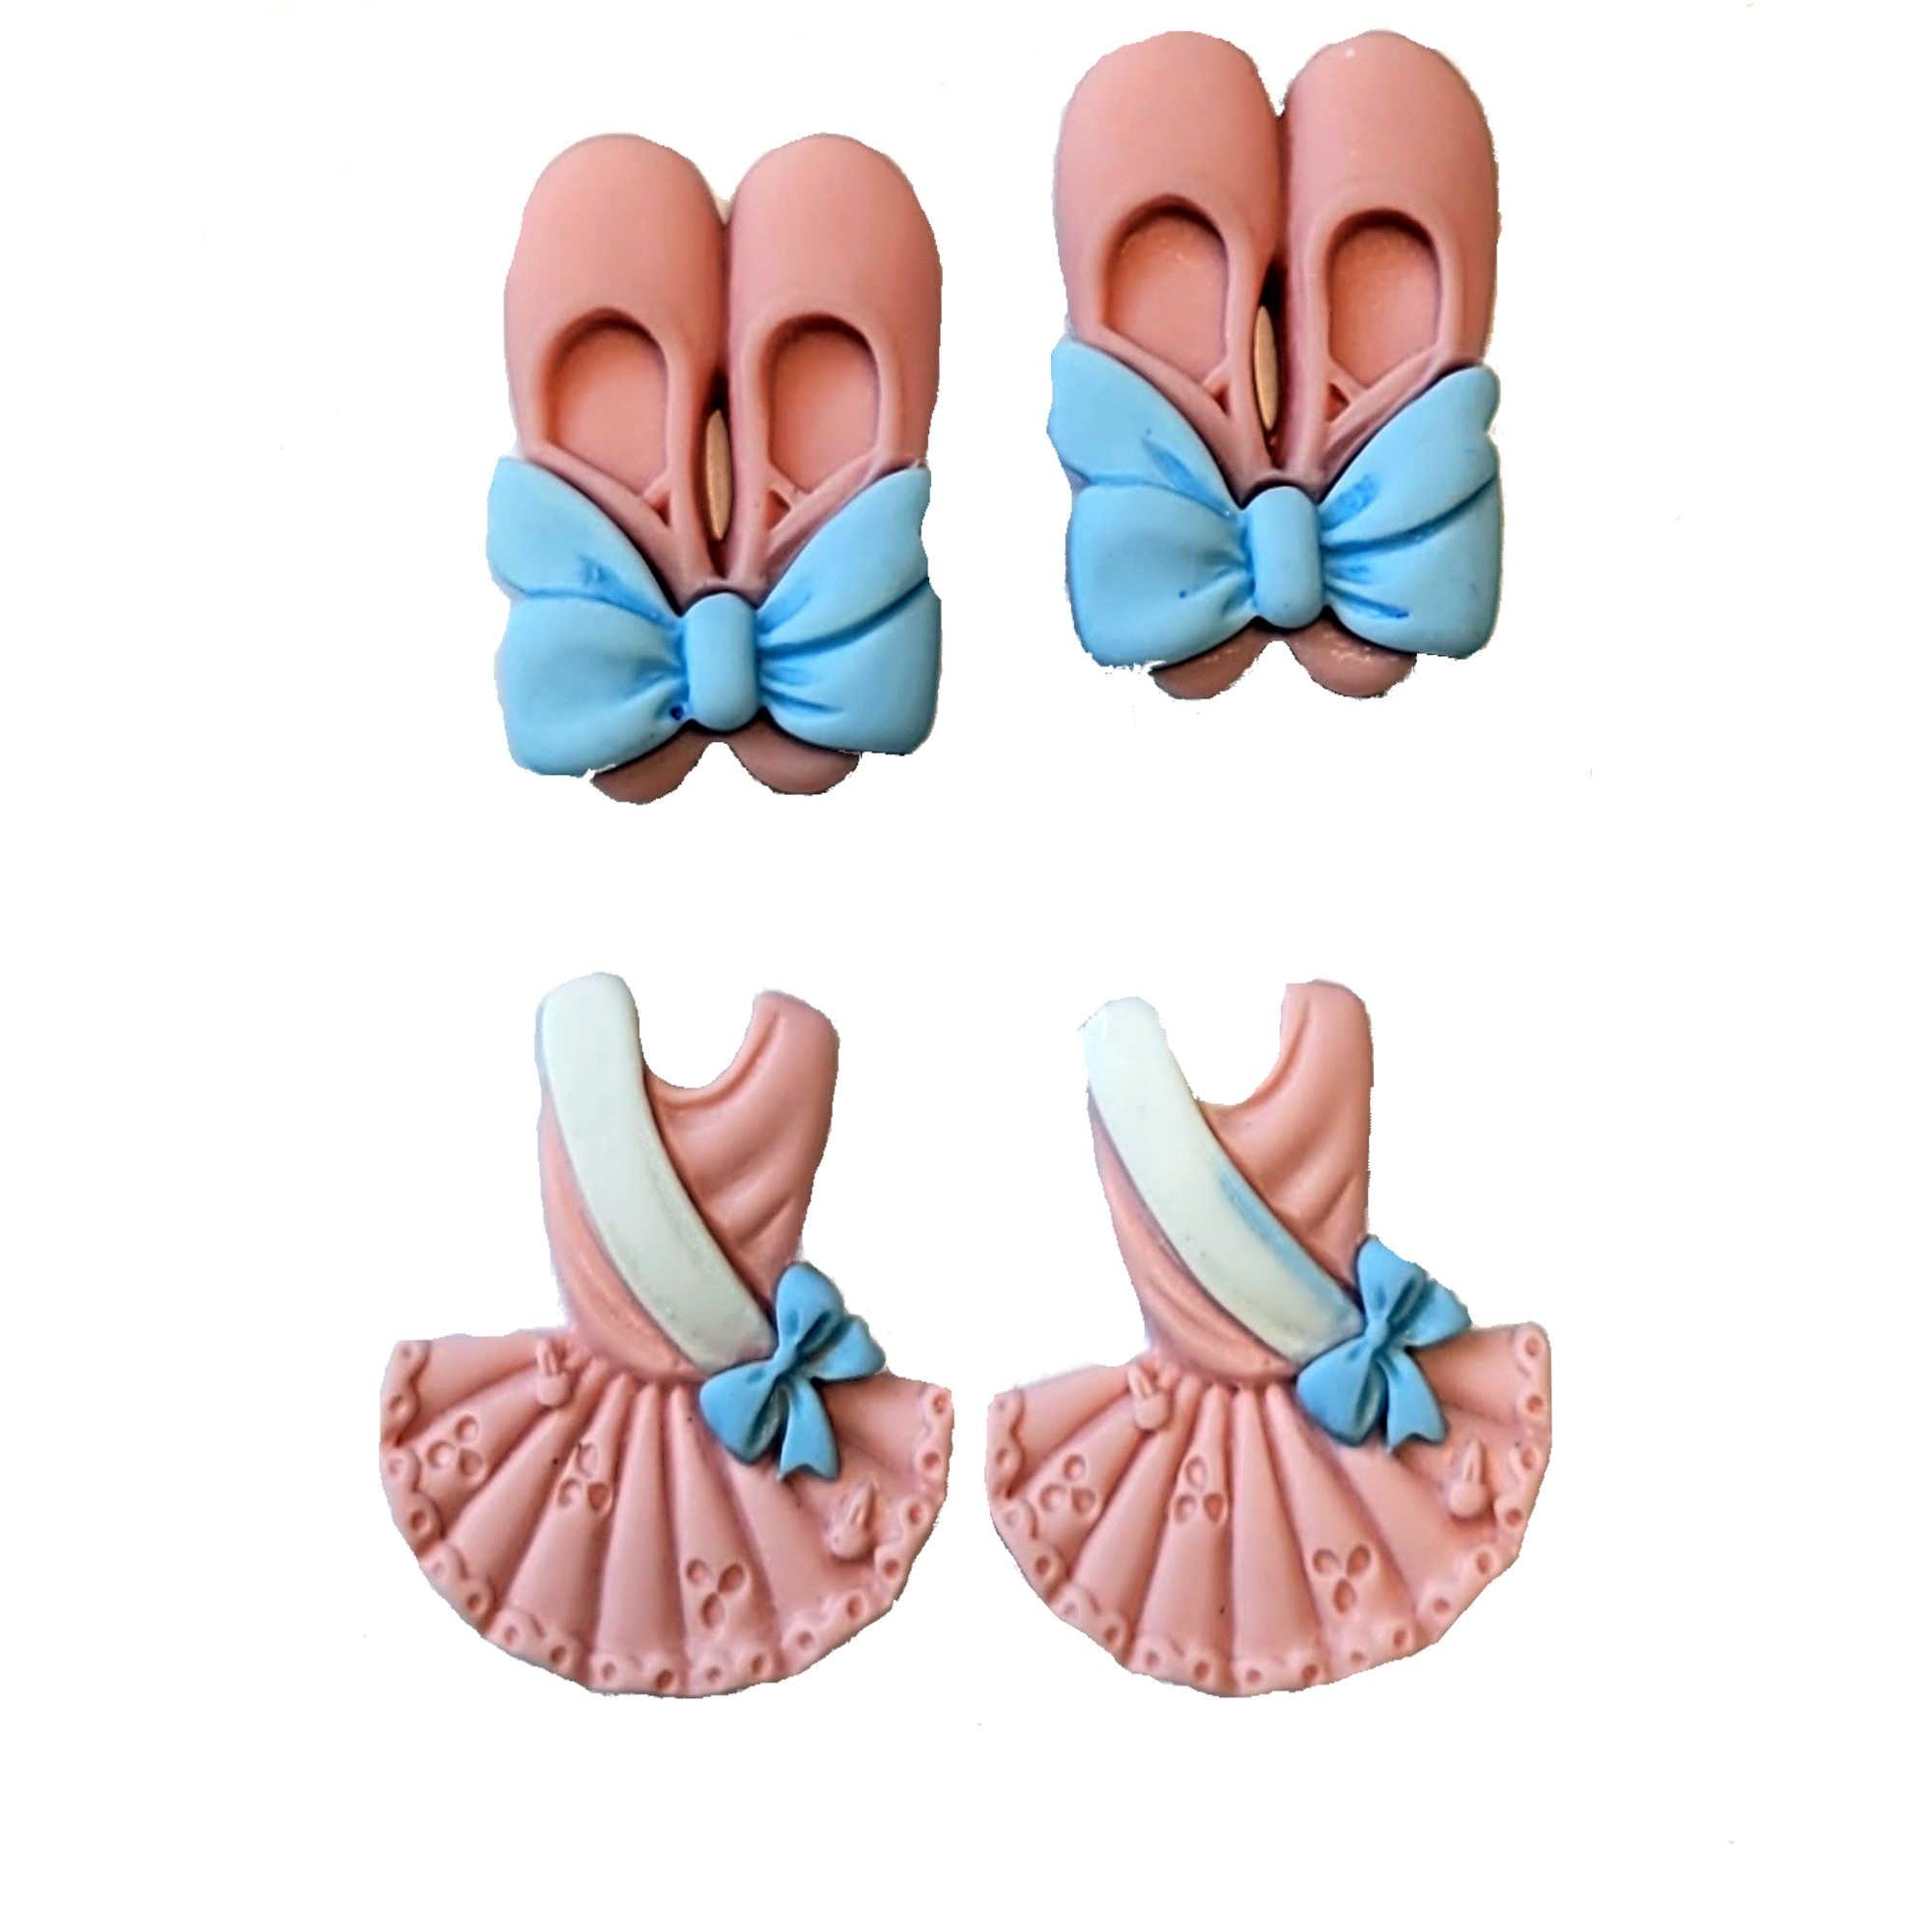 Ballerina Collection Pink Ballerina Dress & Ballet Shoes Flatback Buttons by SSC Designs - Pkg. of 4